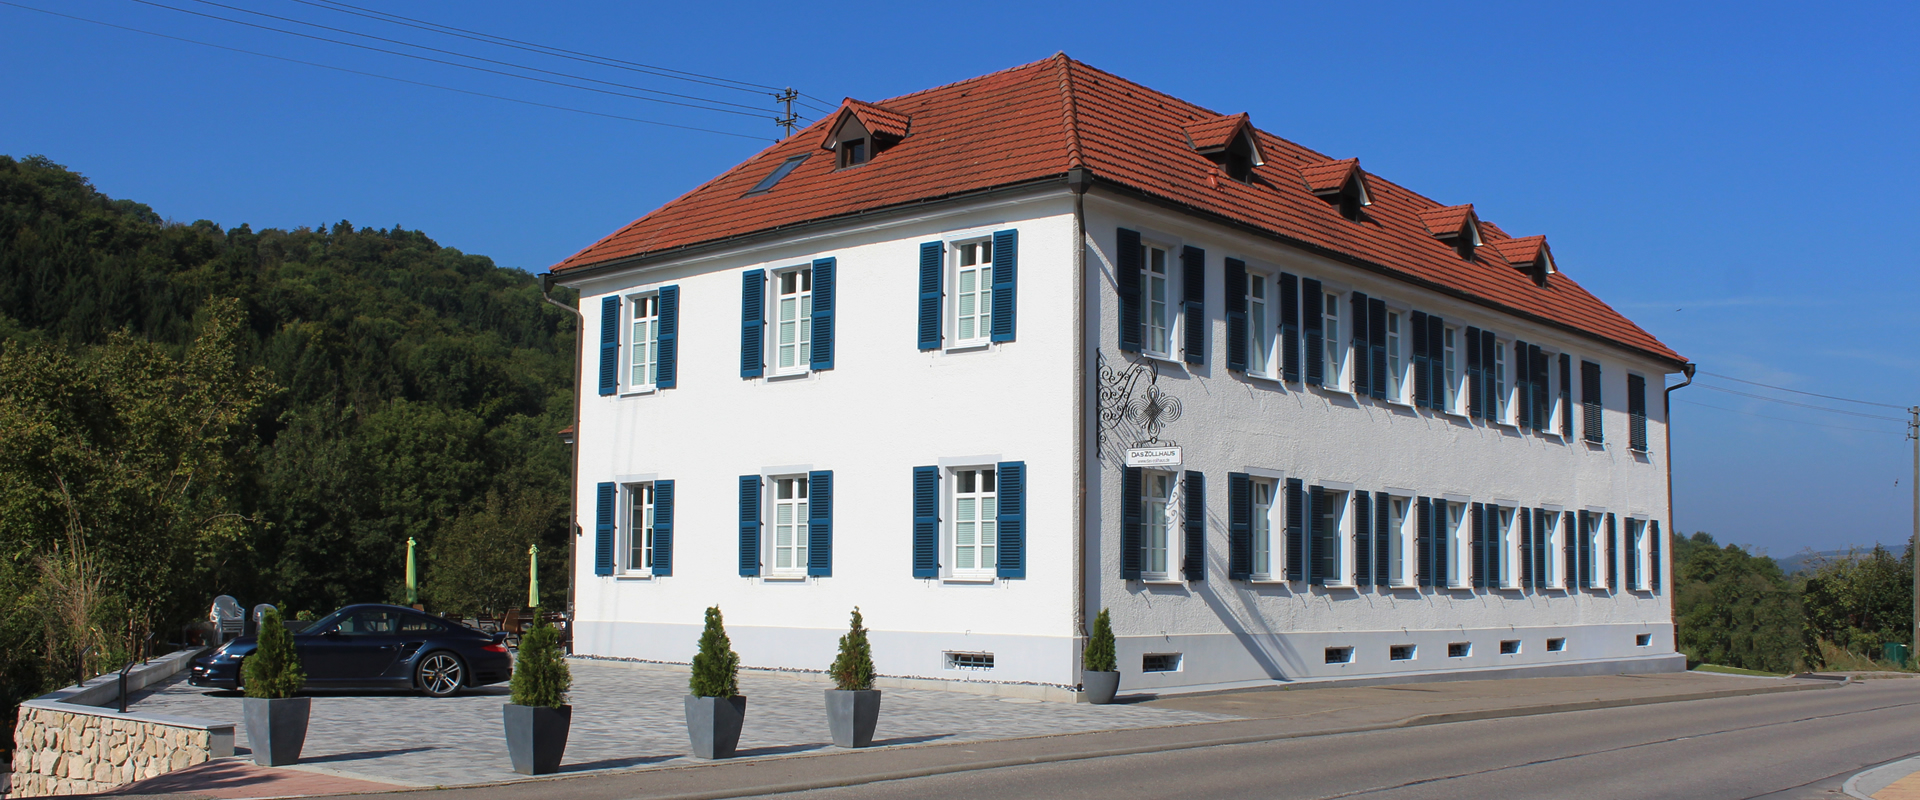 DAS ZOLLHAUS - Altes Zollhaus in Riedern am Sand (Klettgau) Ansicht von Nordosten